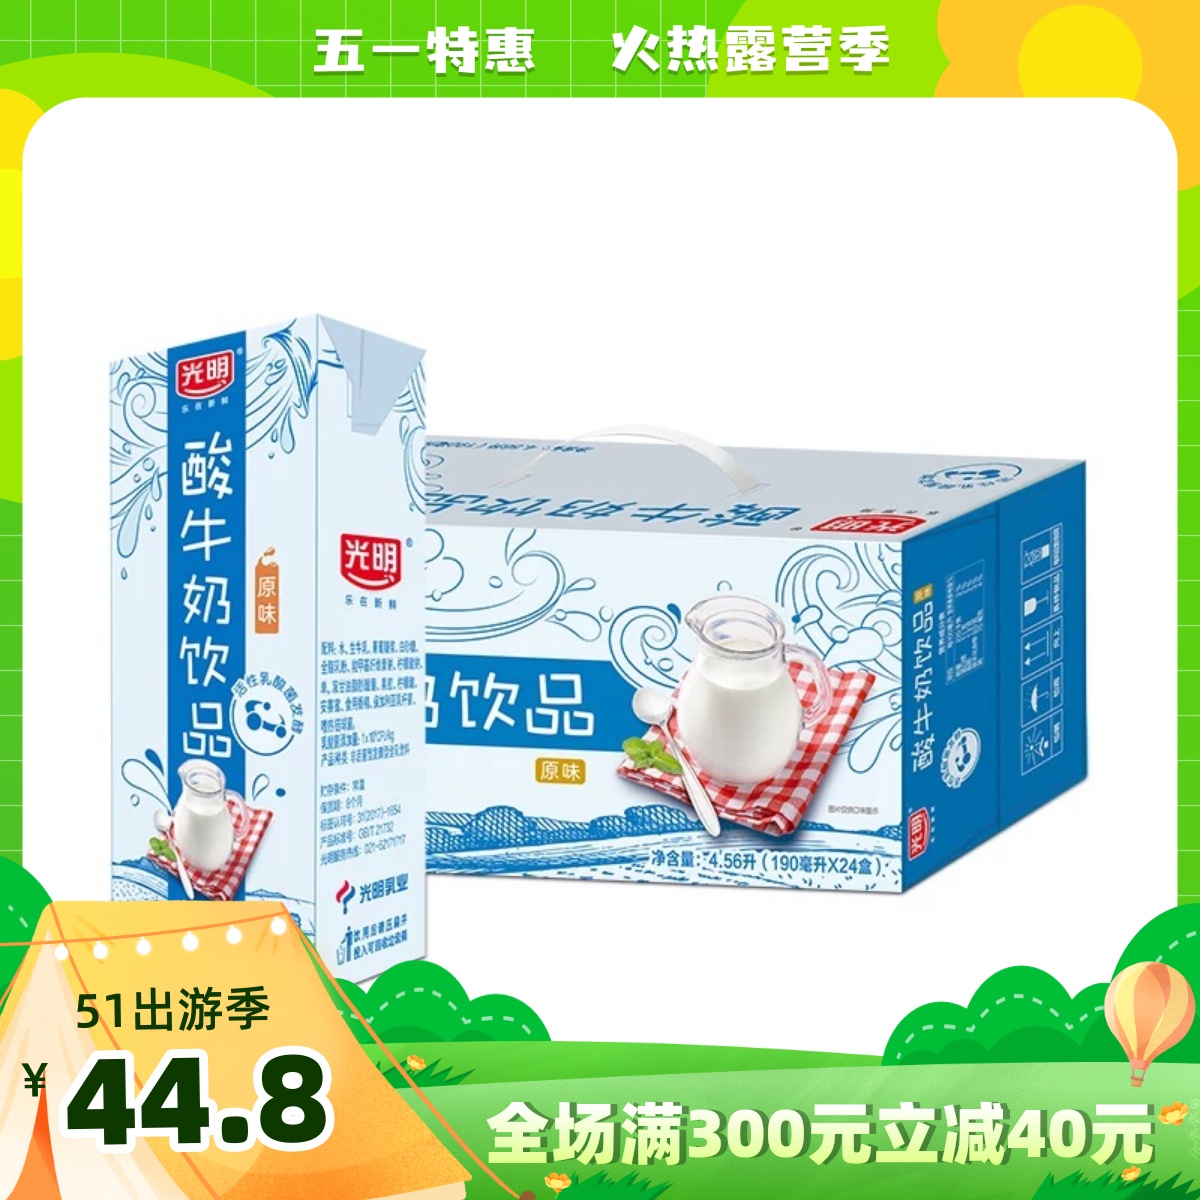 3月生产 光明酸牛奶饮品老上海风味常温牛奶营养酸甜190ml*24盒